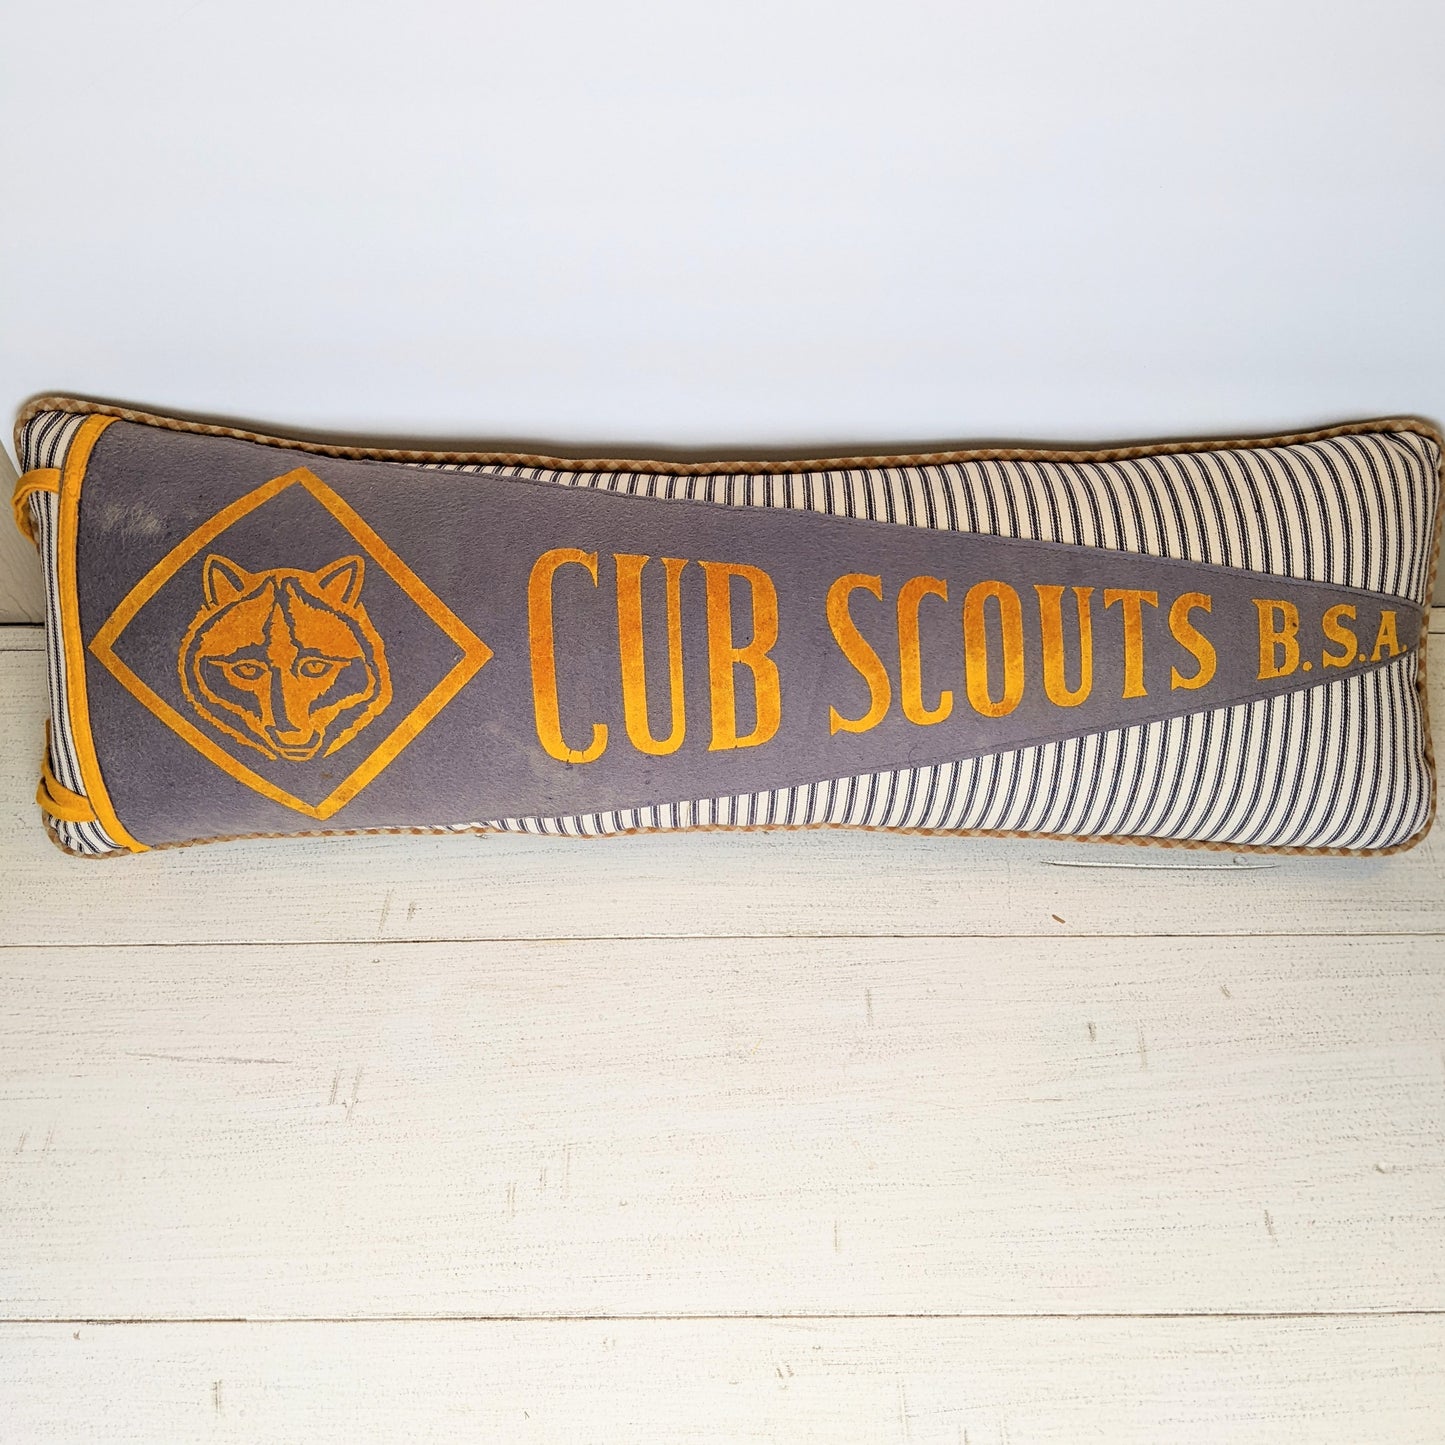 Cub Scouts vintage pennant pillow